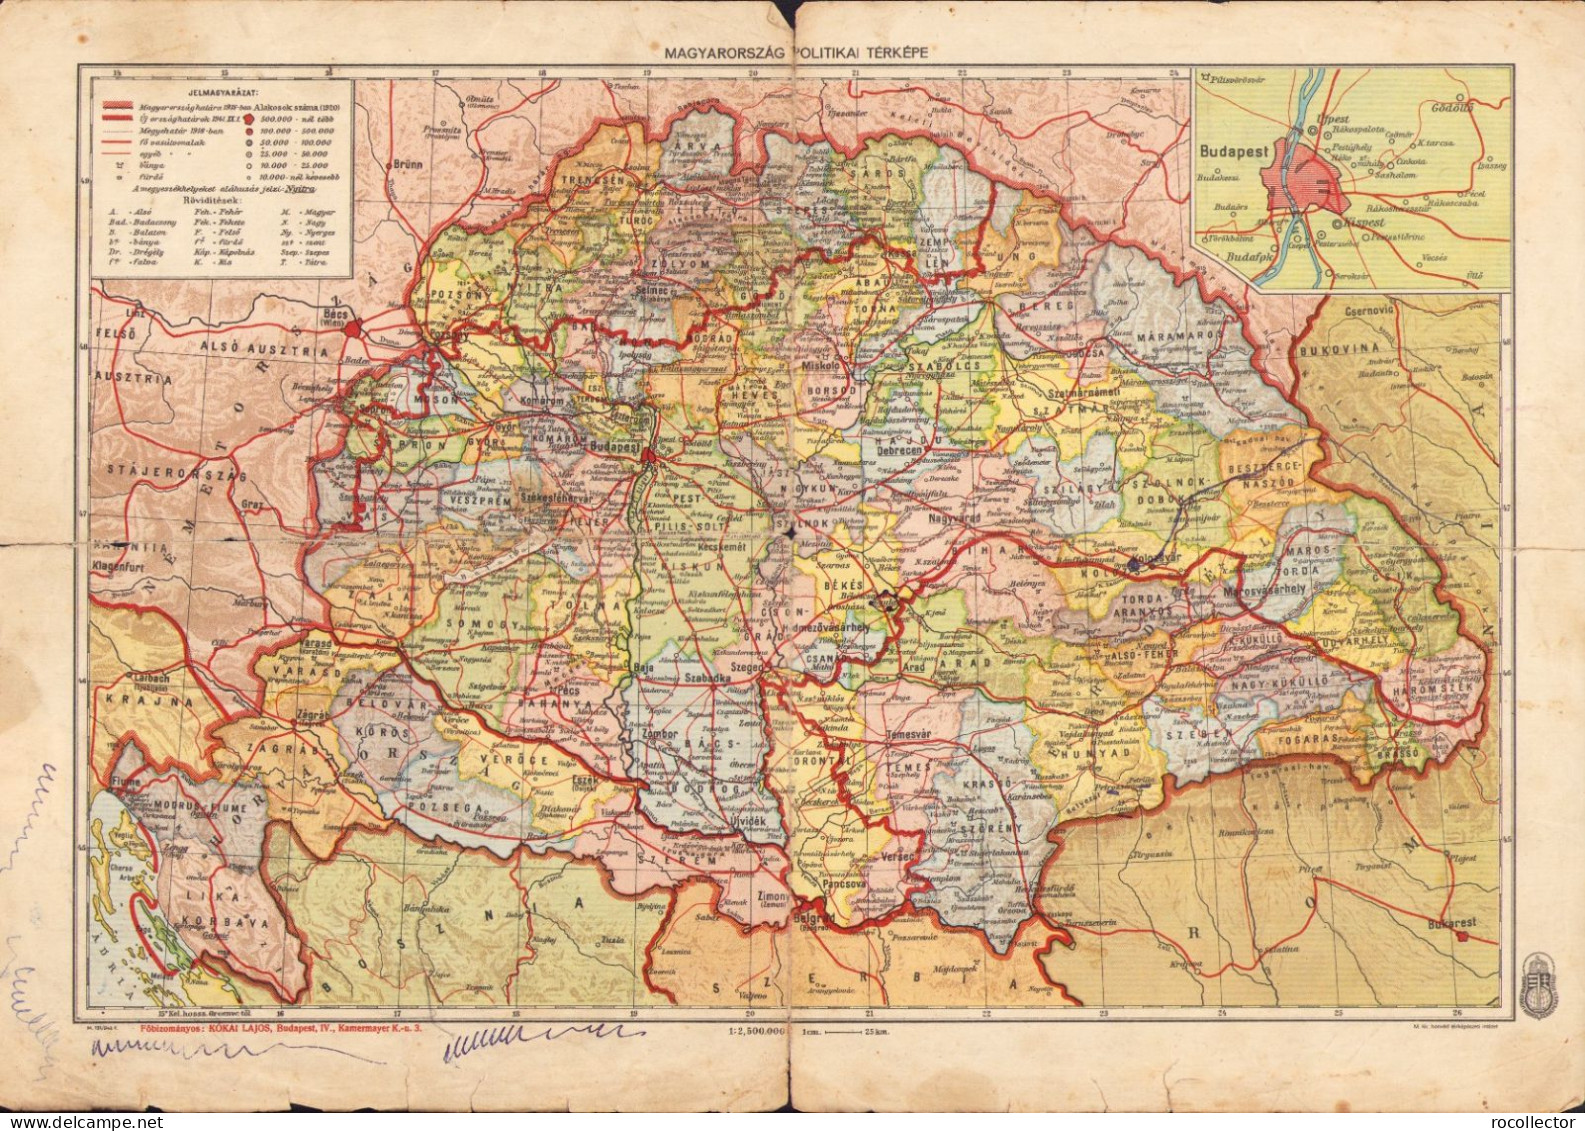 Magyarország Hegy- és Vizrajzi/politikai Térképe, 1943 A2480N - Landkarten